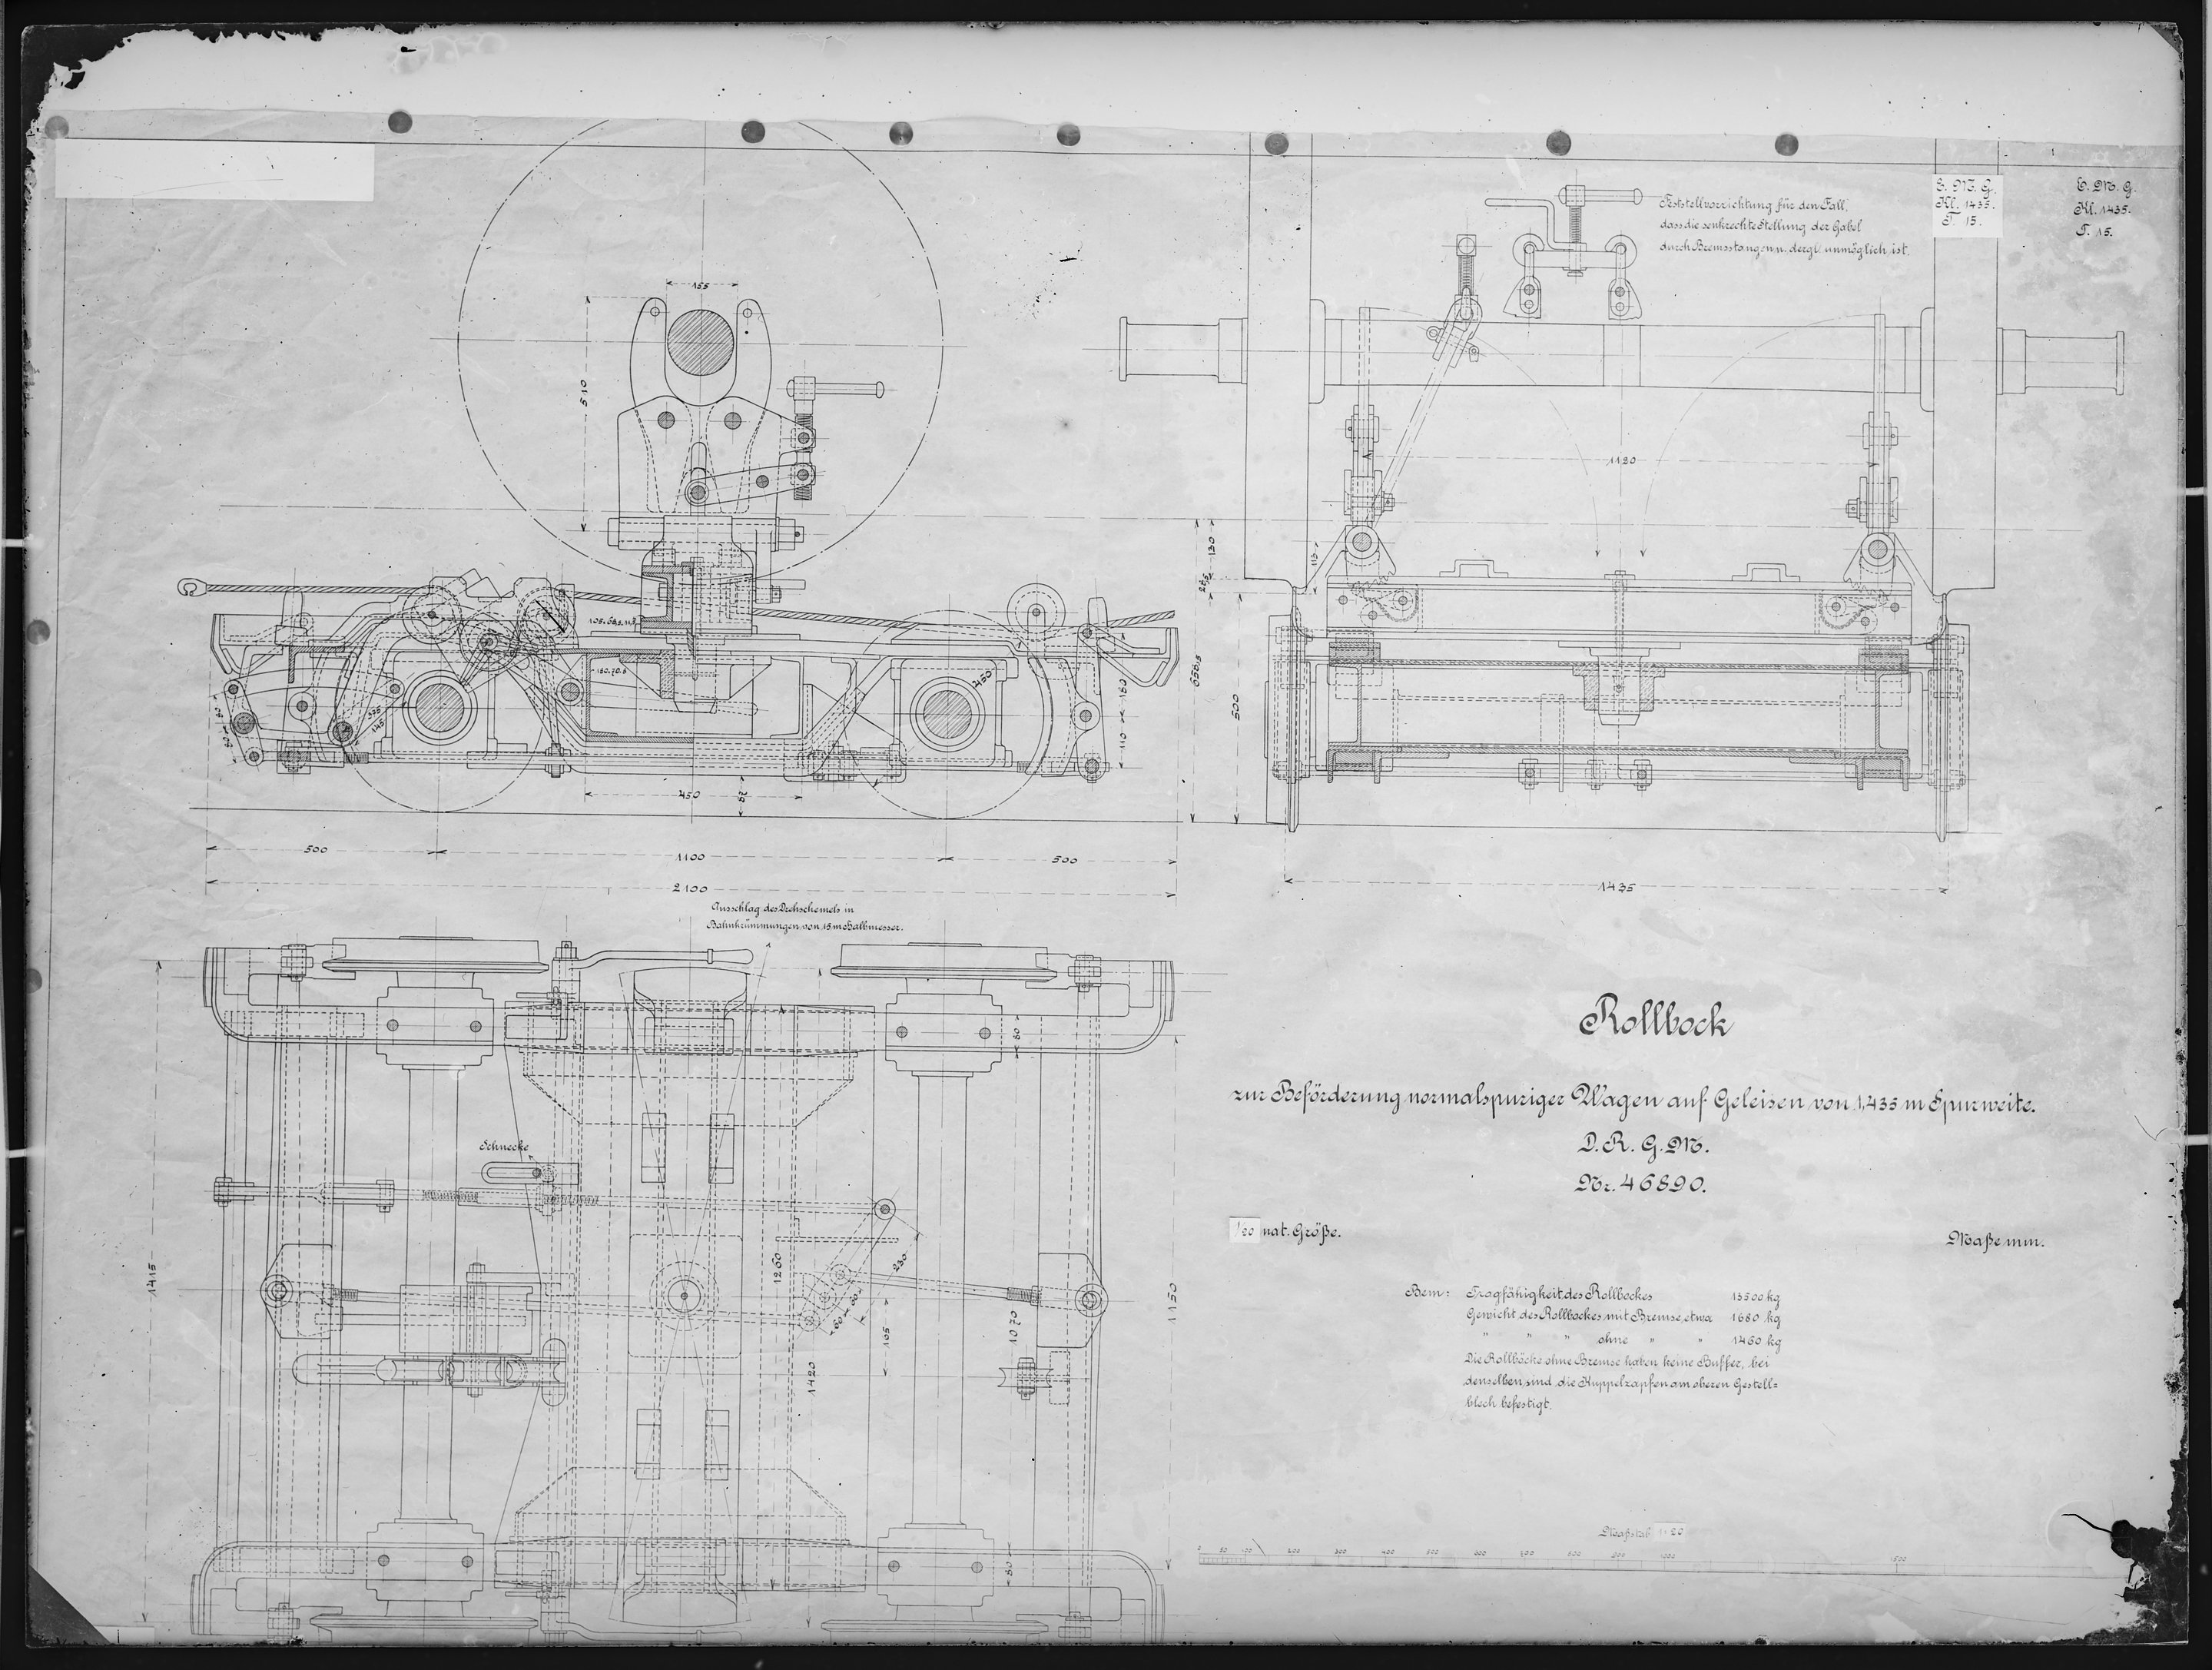 Fotografie: Maßzeichnung eines Rollbocks zur Beförderung normalspuriger Wagen auf Geleisen von 1,435 m Spurweite, um 1900? (Verkehrsmuseum Dresden CC BY-NC-SA)